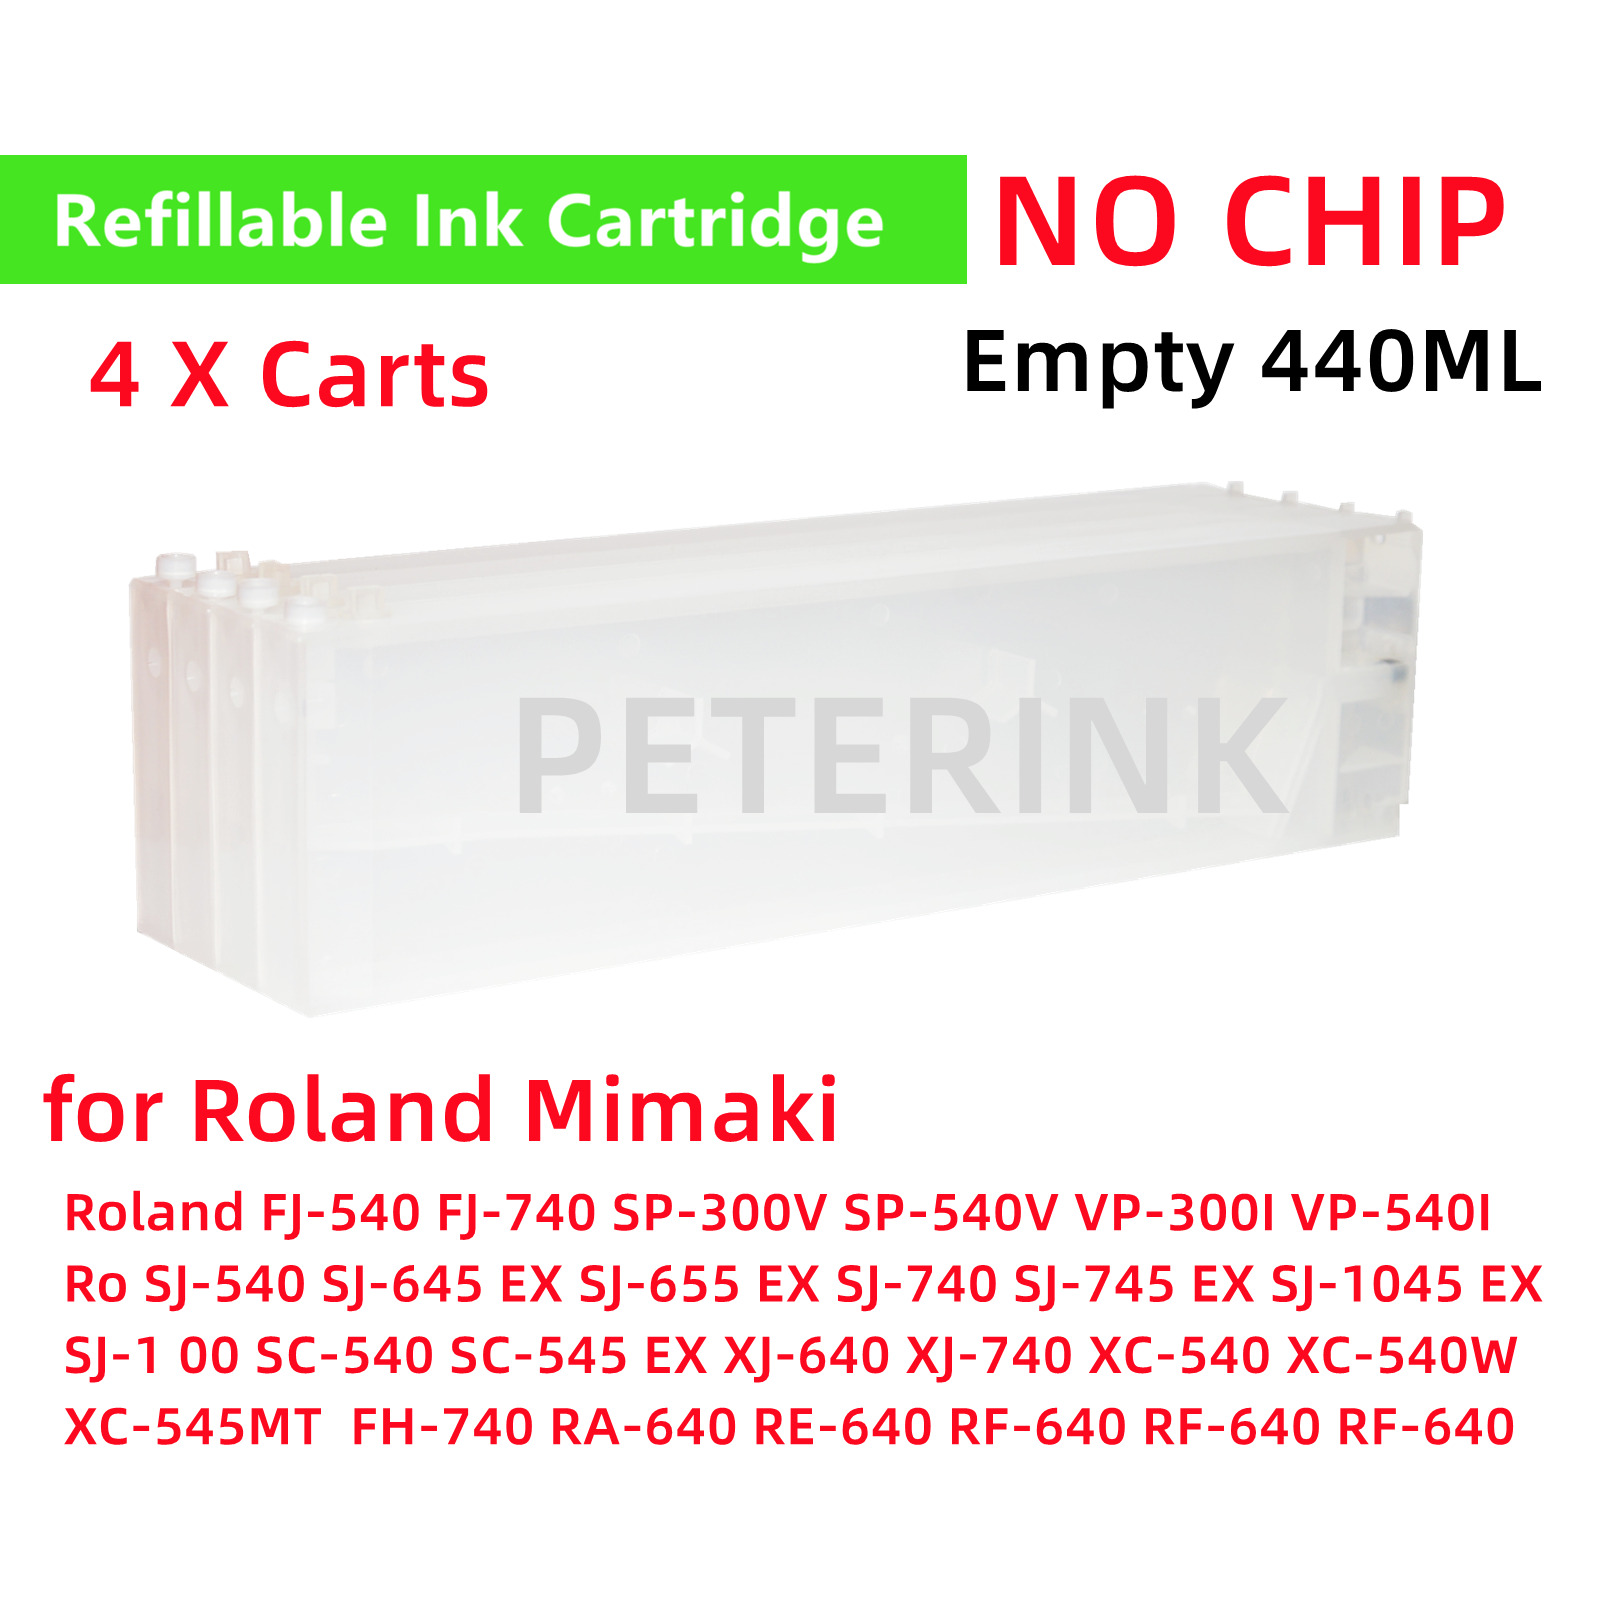 Empty 440ML Refillable Ink Cartridge for  Roland Mutoh Mimaki XJ640 XJ740 XC540W